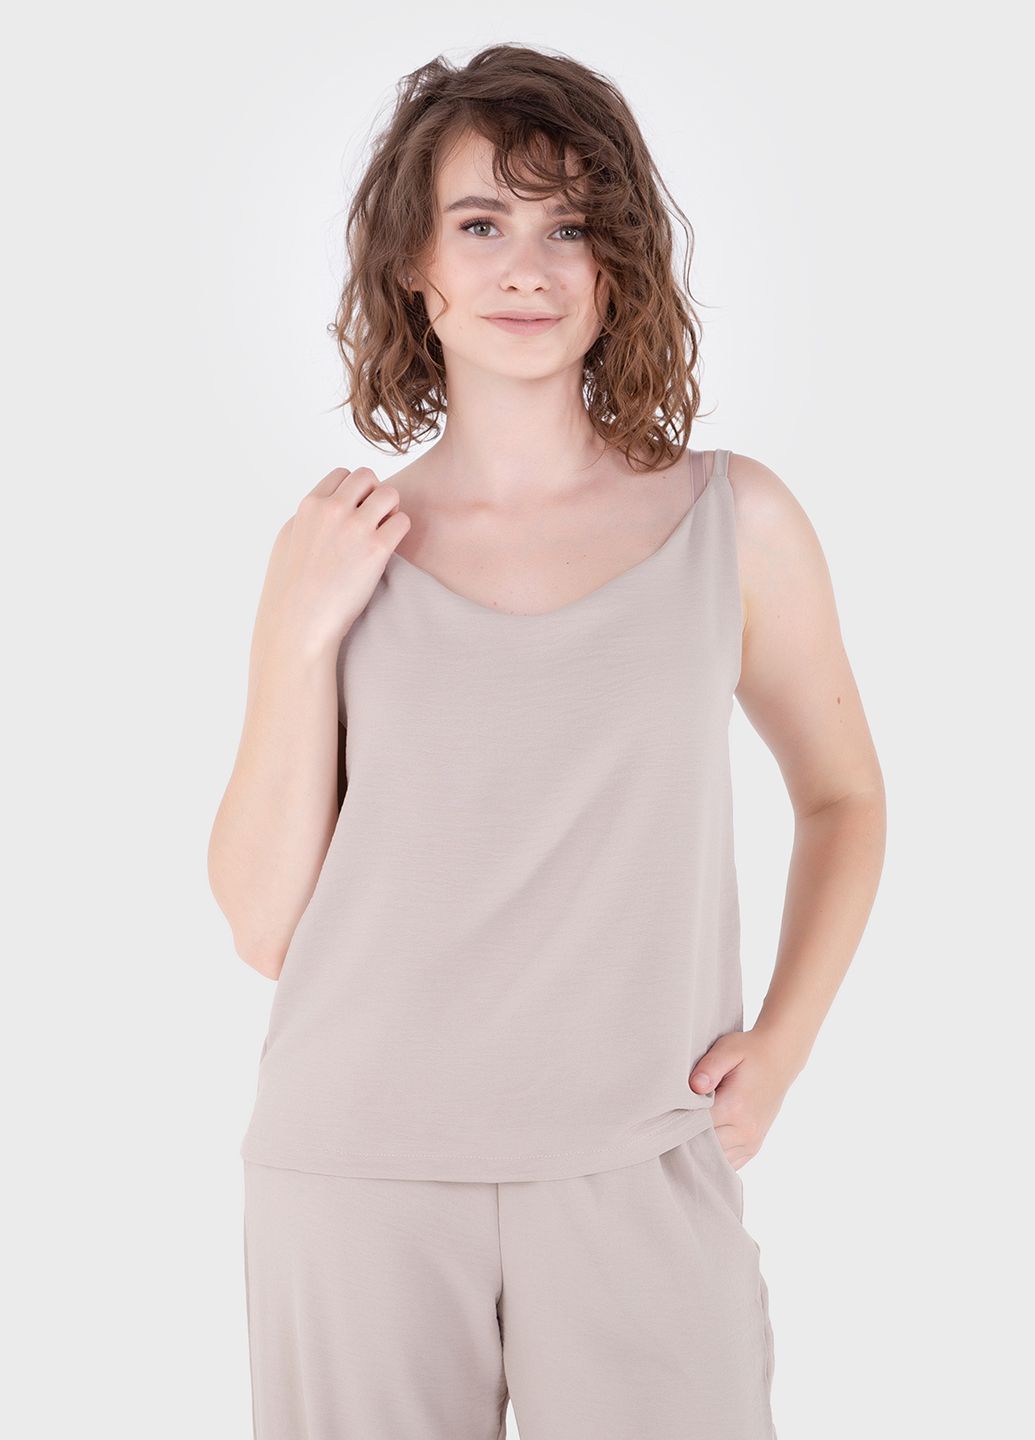 Купить Модный летний костюм женский бежевого цвета Merlini Тройка 100000130, размер 42-44 в интернет-магазине